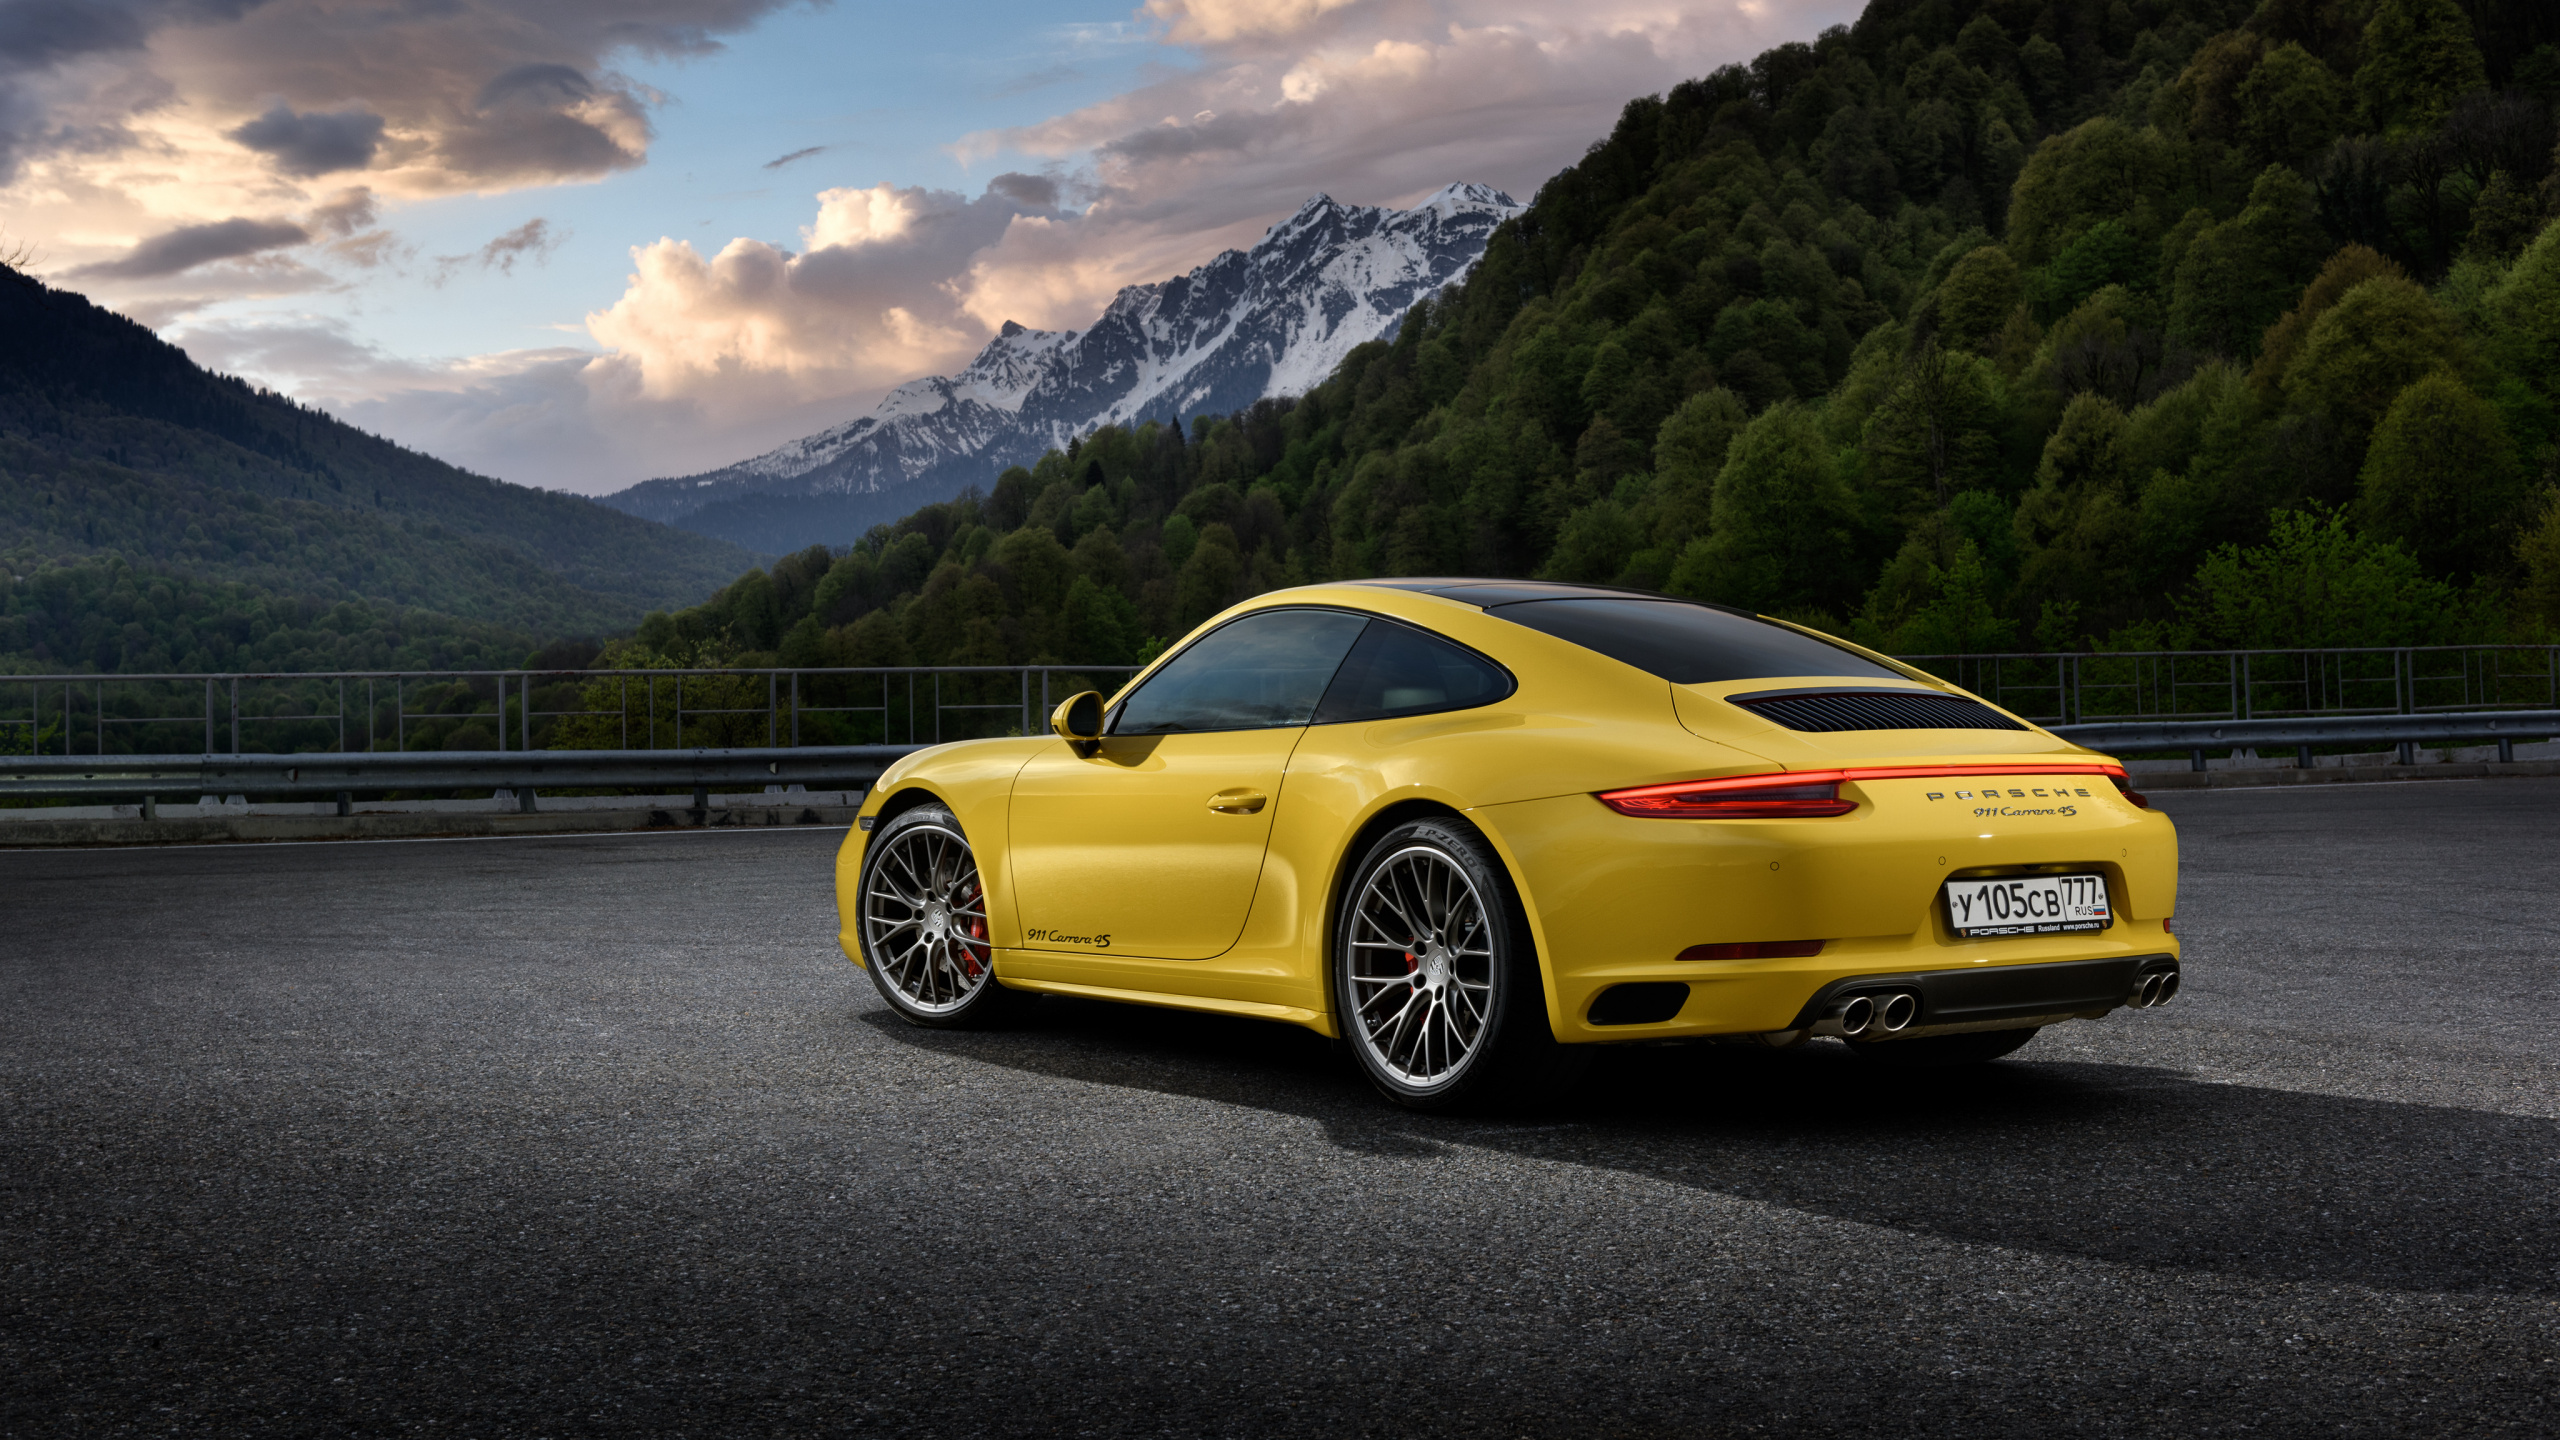 Porsche 911 Jaune Sur Route Près de la Montagne Pendant la Journée. Wallpaper in 2560x1440 Resolution